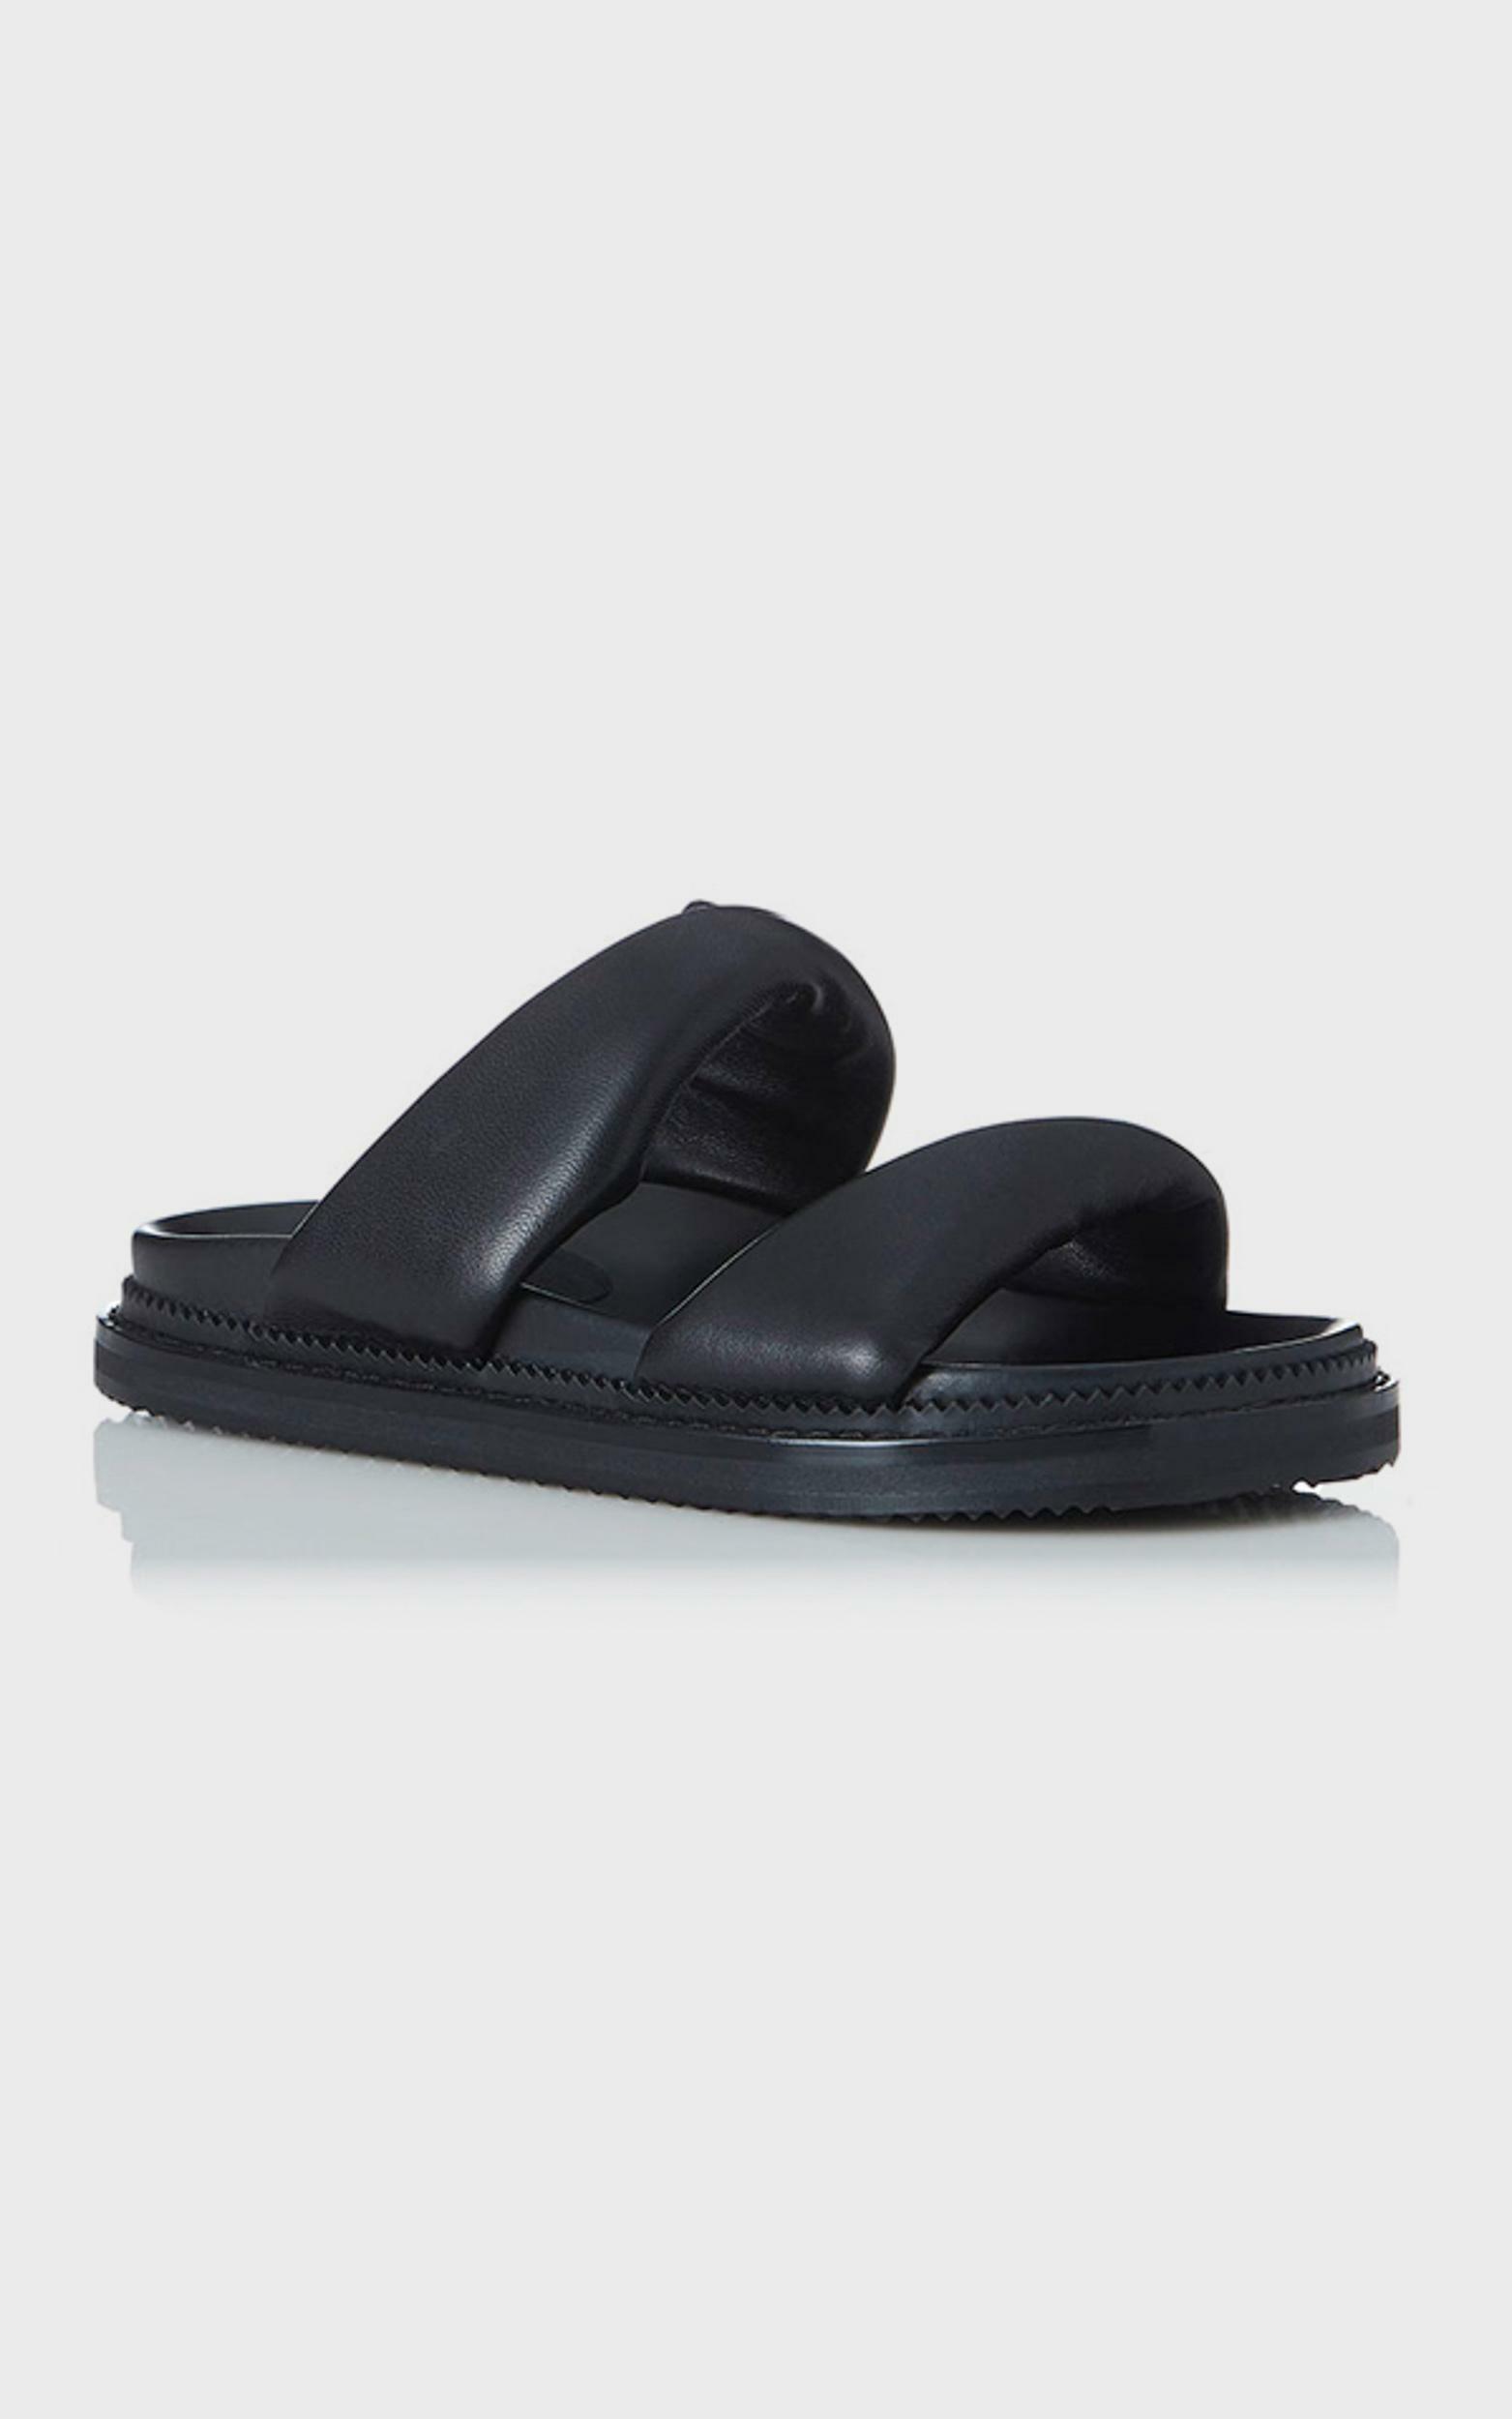 Alias Mae - Paris Slides in Black Leather | Showpo